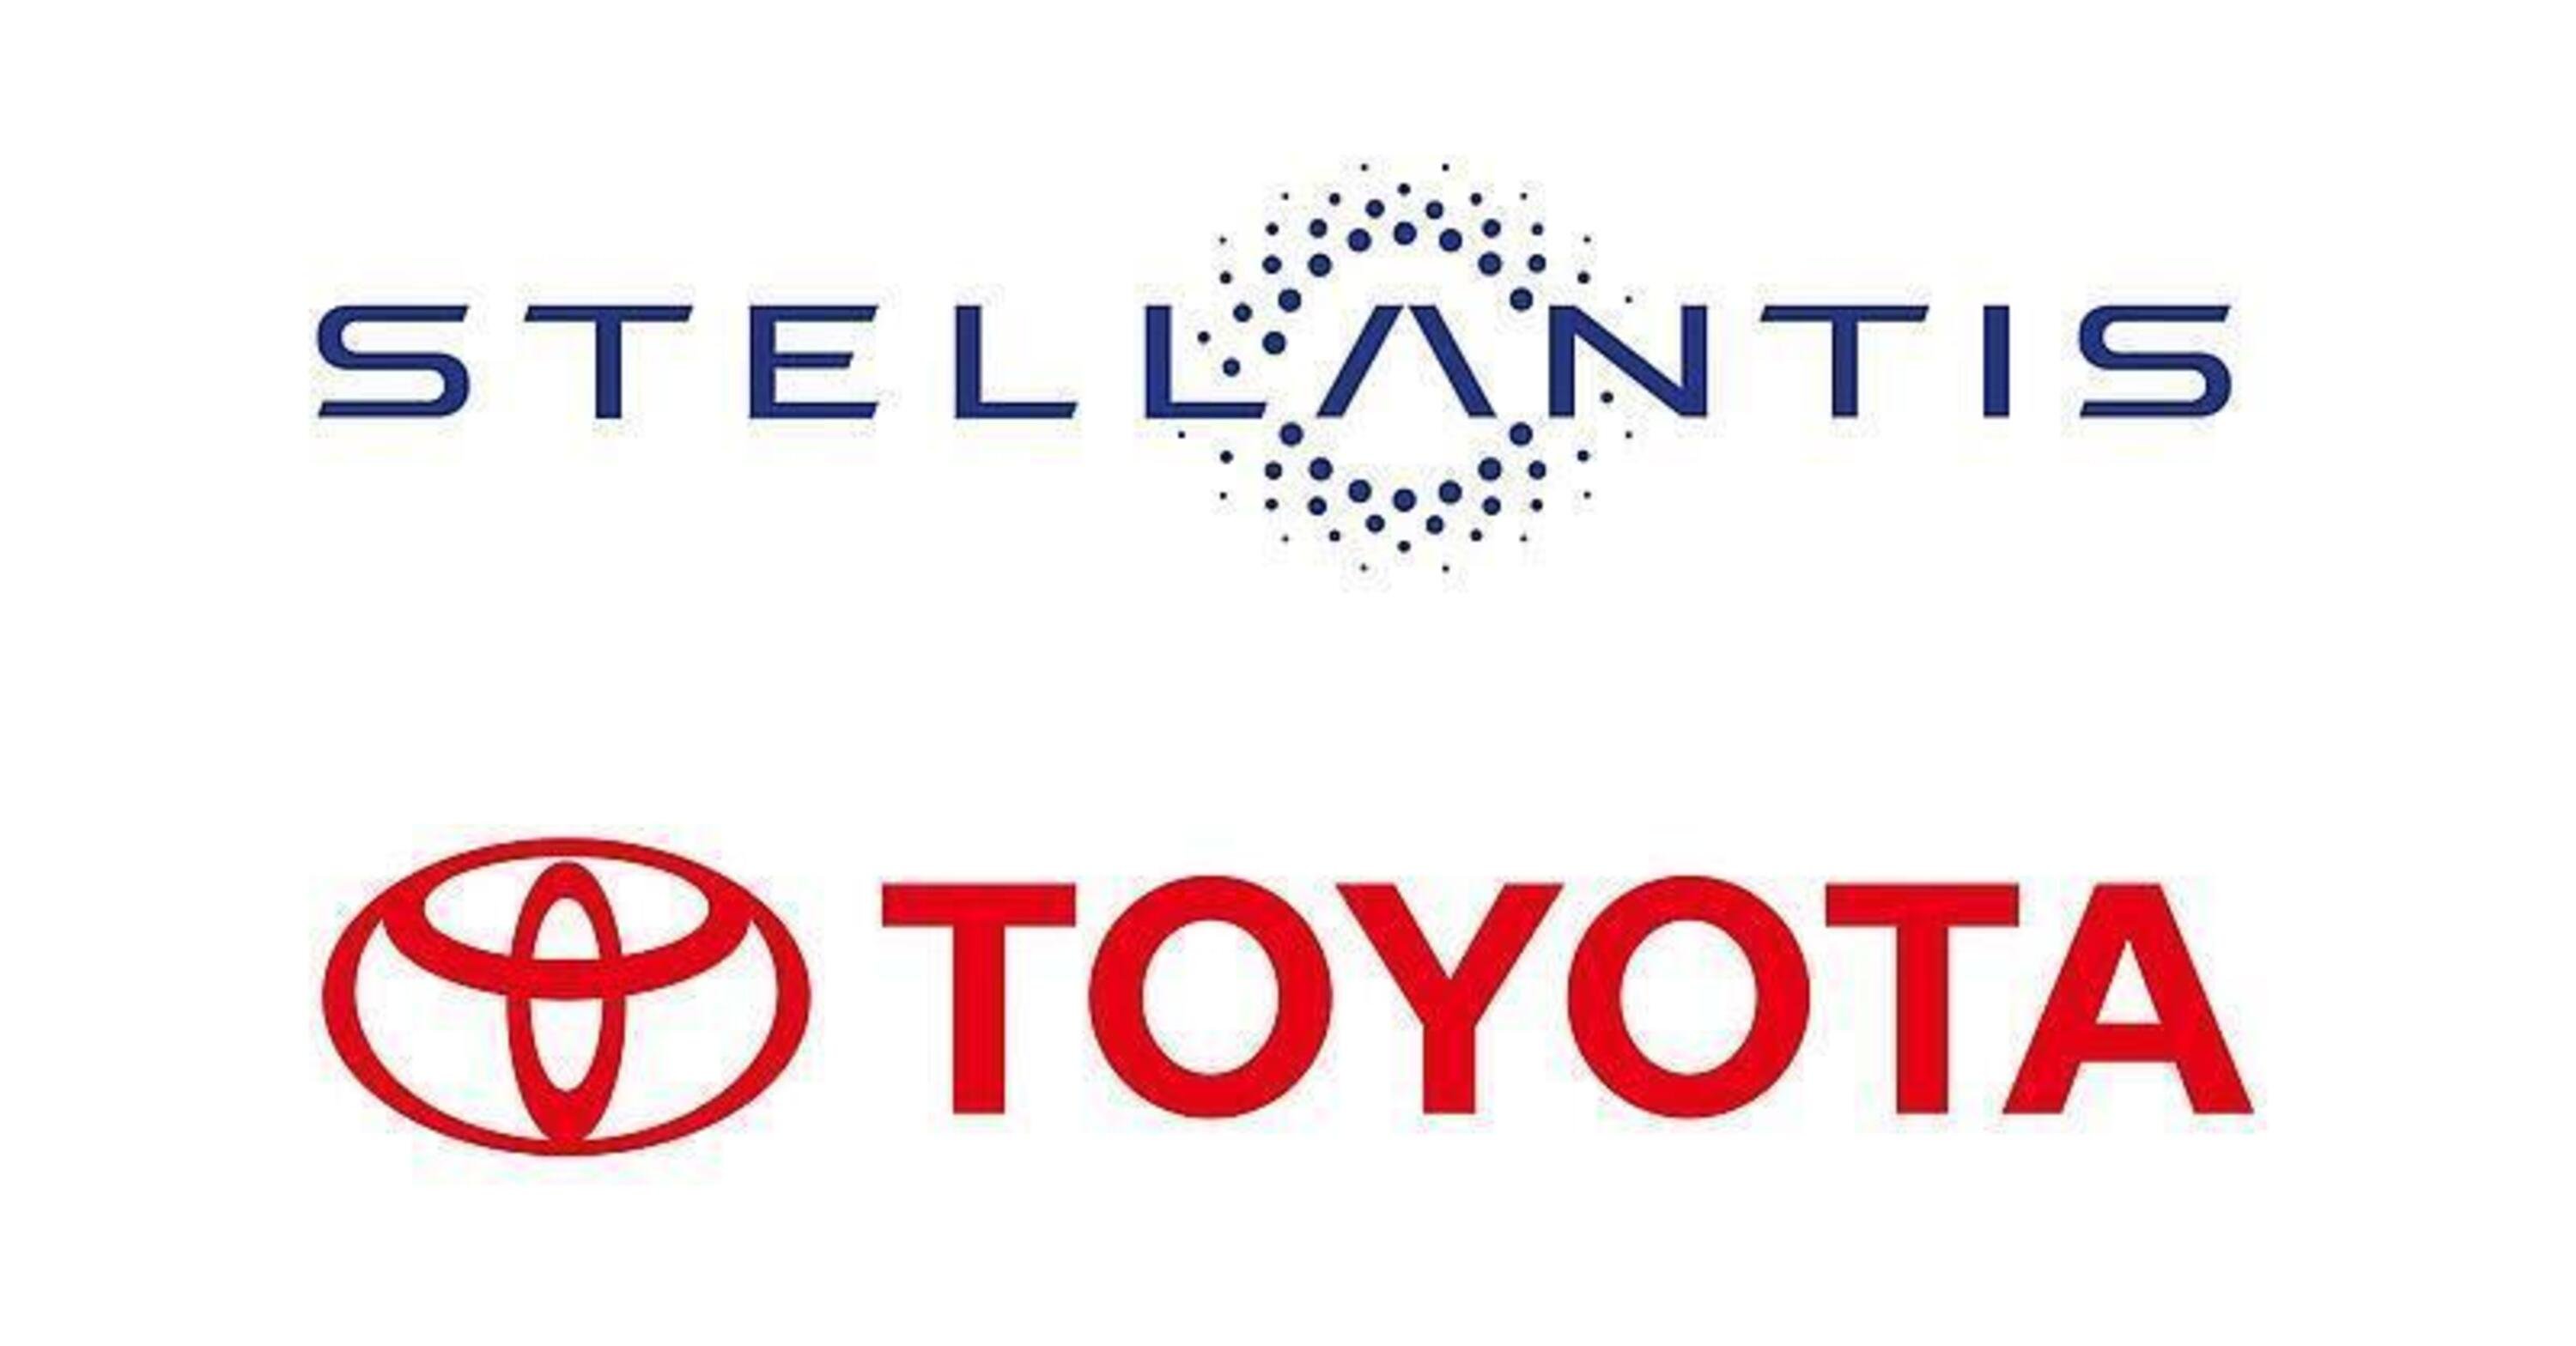 Toyota si accorda con Stellantis per realizzare nuovi veicoli: il Fiat Ducato mette logo giapponese?